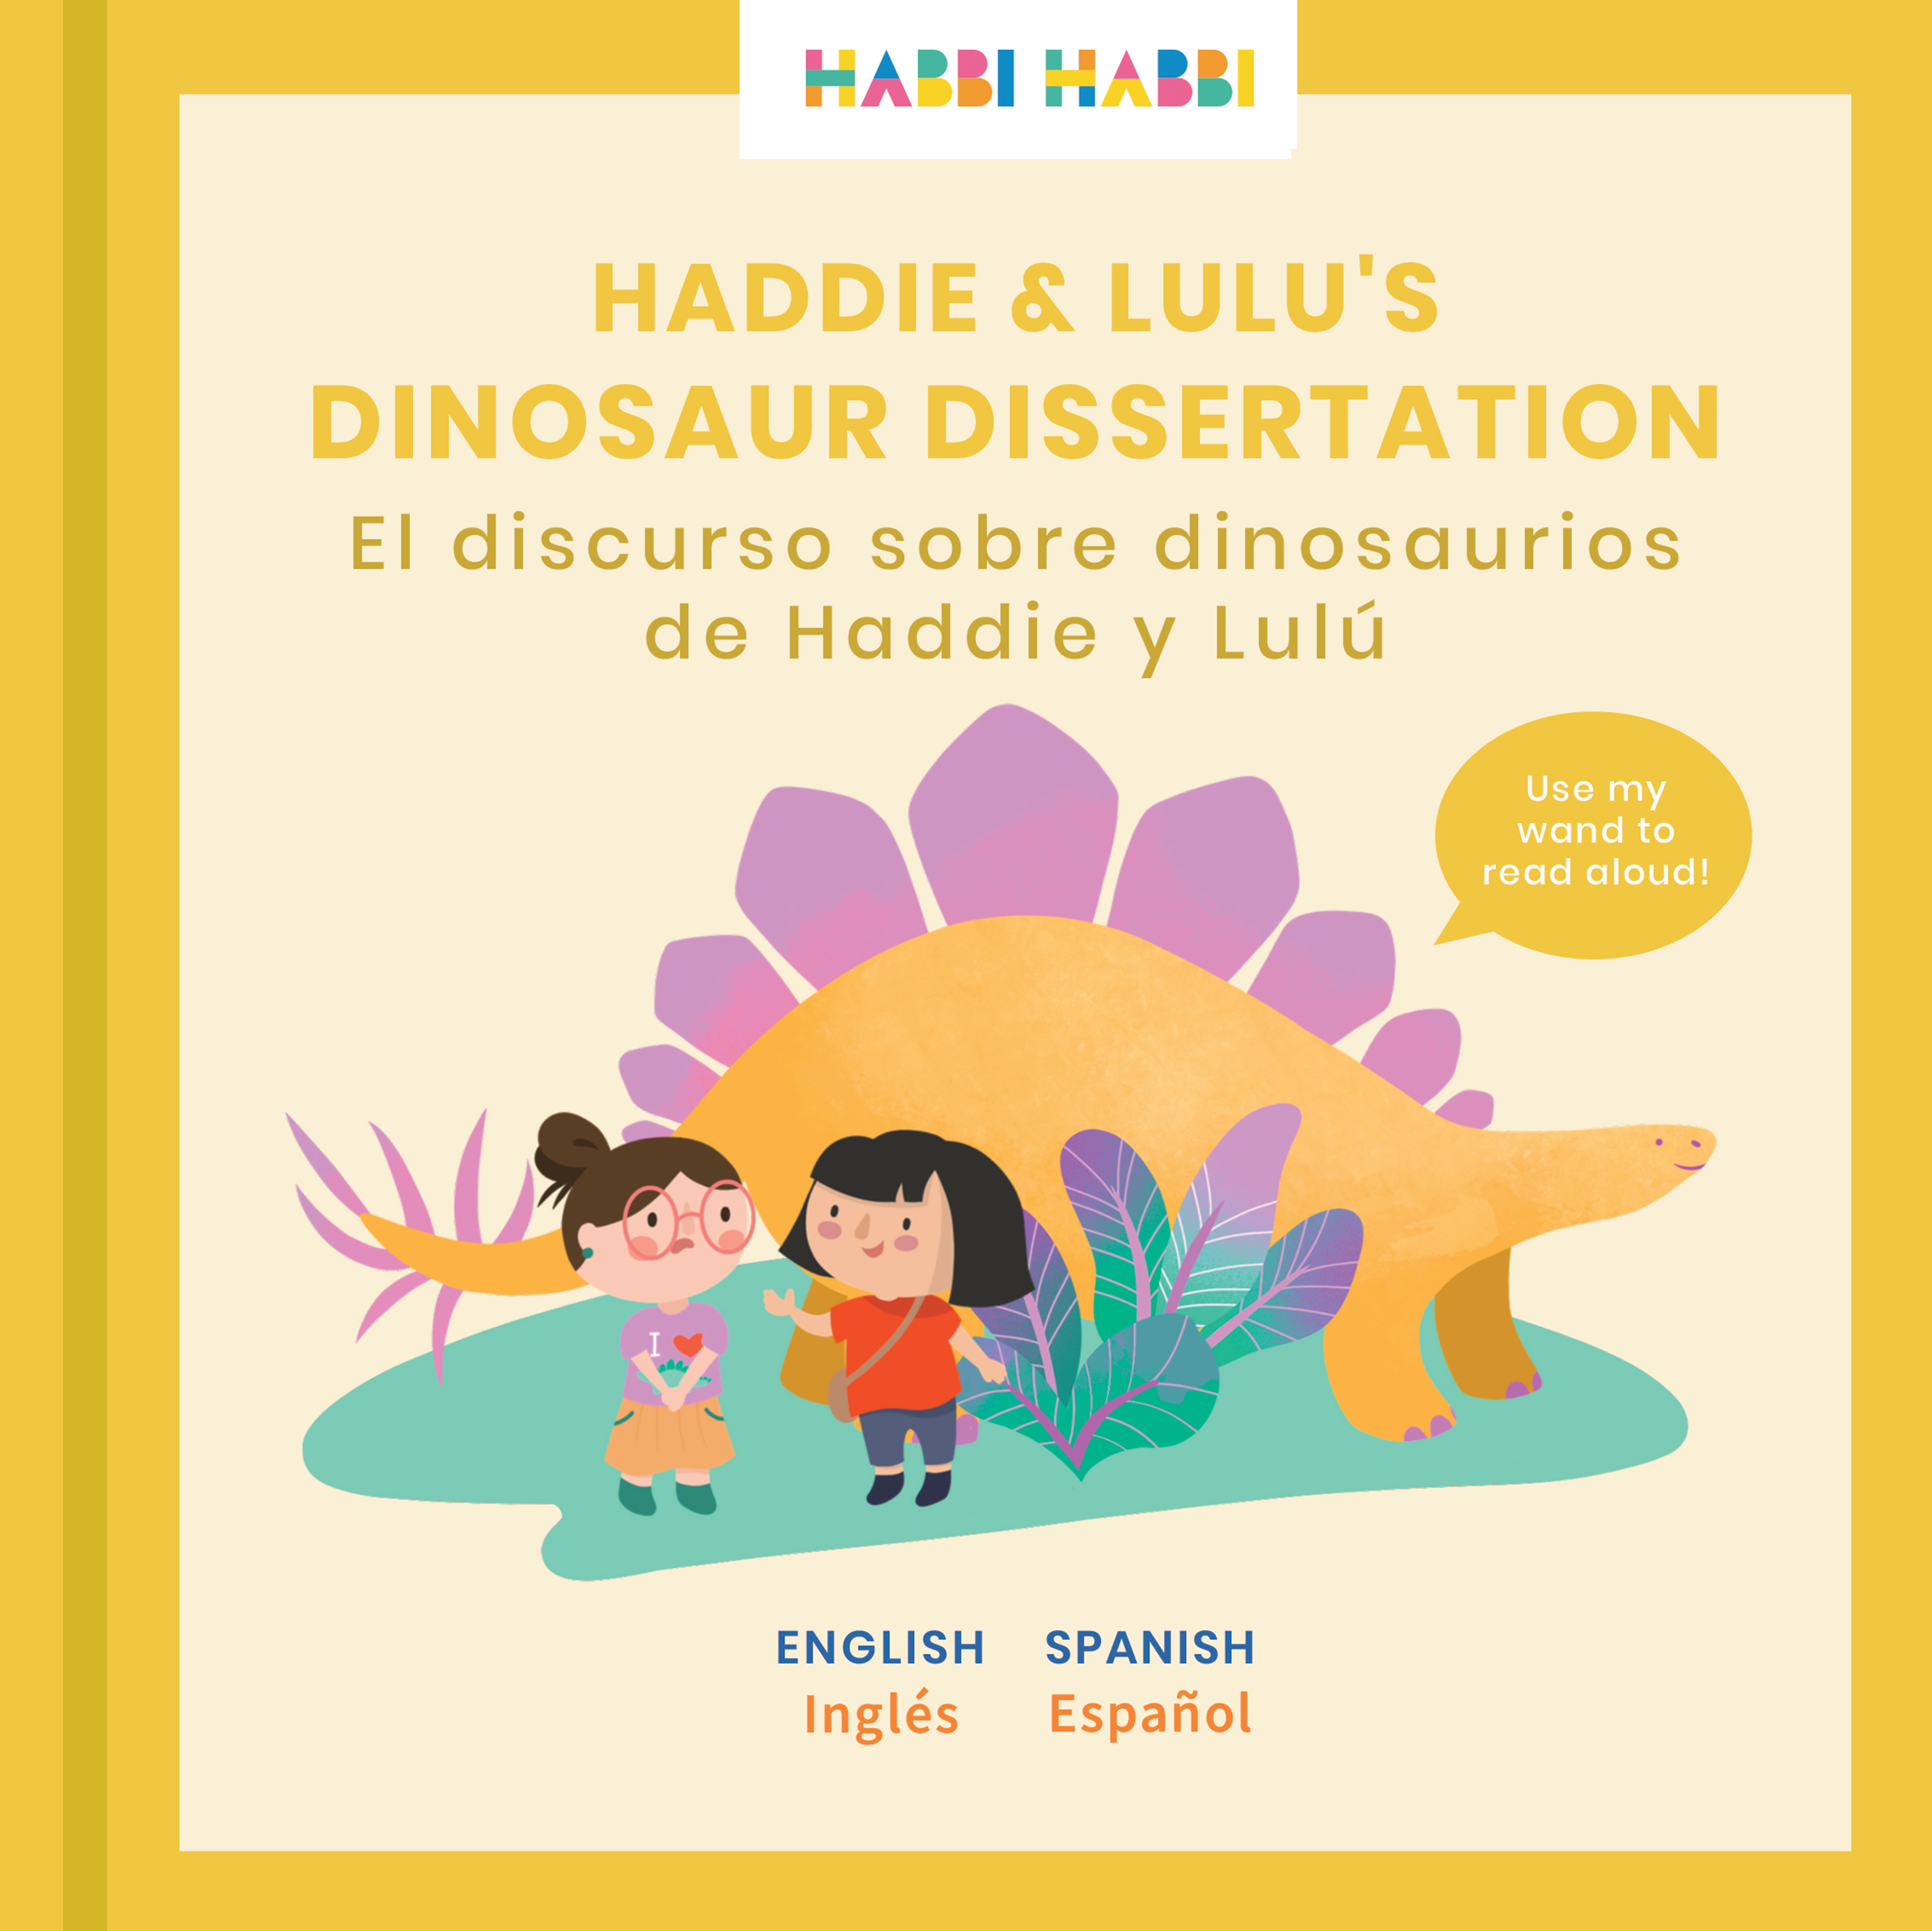 Habbi Habbi Bilingual Books - Haddie & Lulu's Dinosaur Dissertation: SPANISH-English